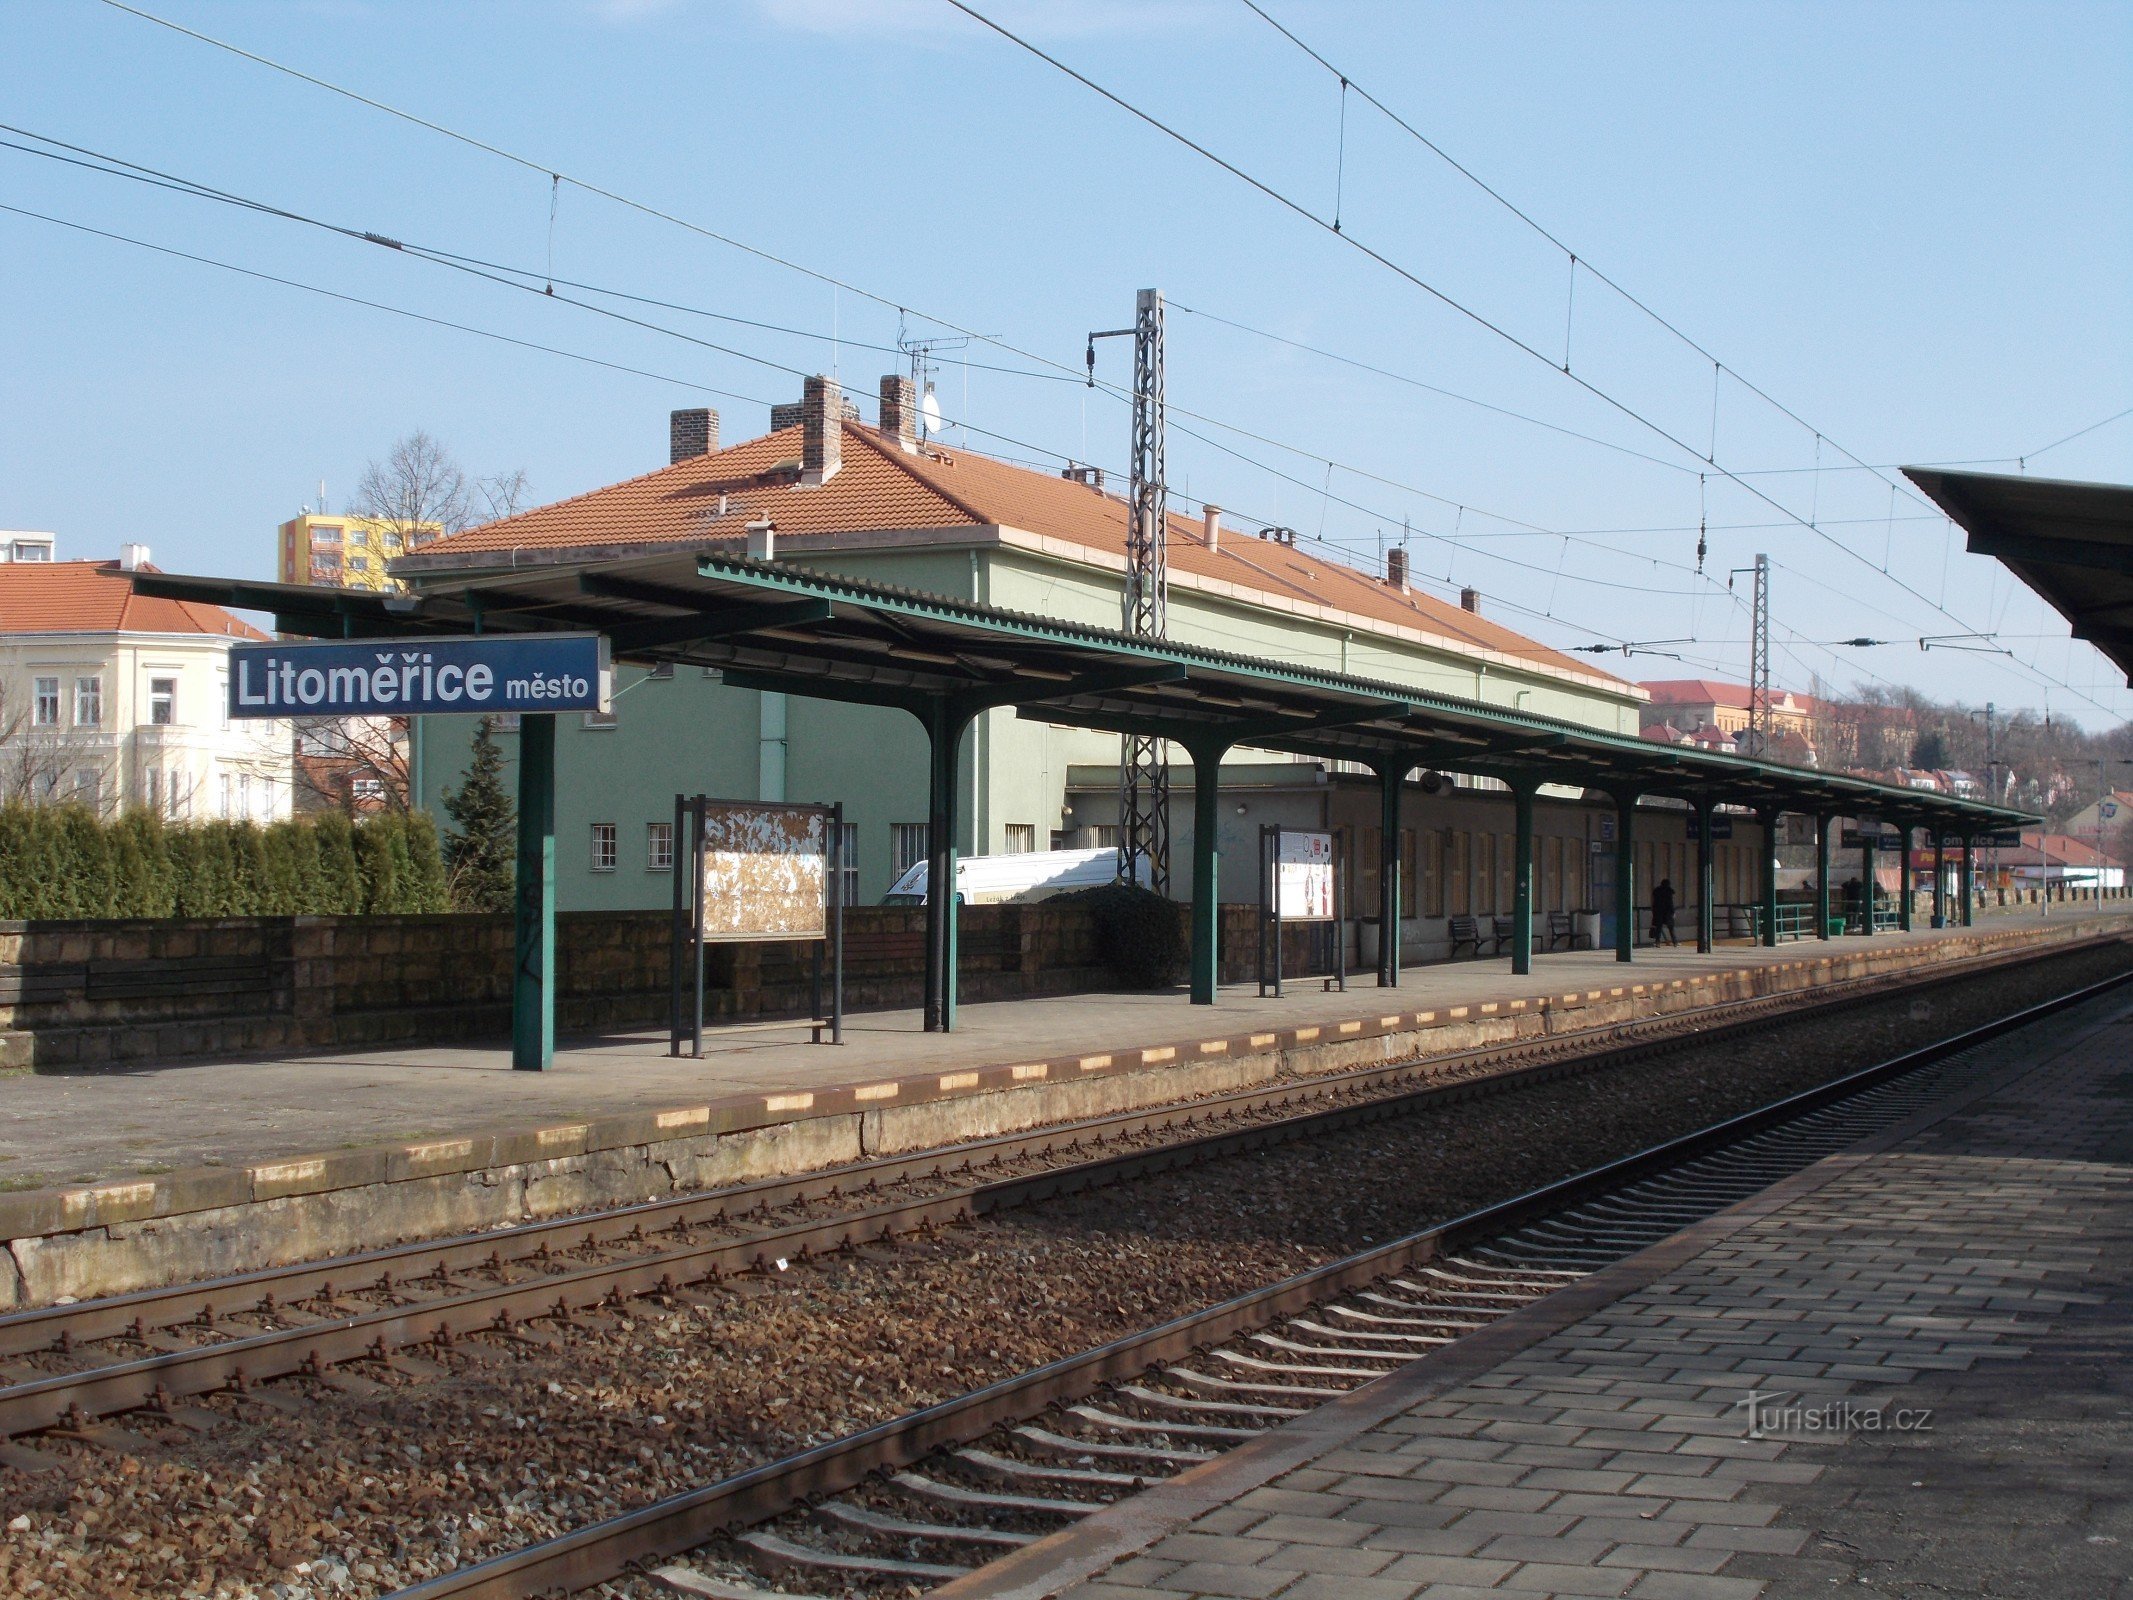 город Литомержице - железнодорожная станция